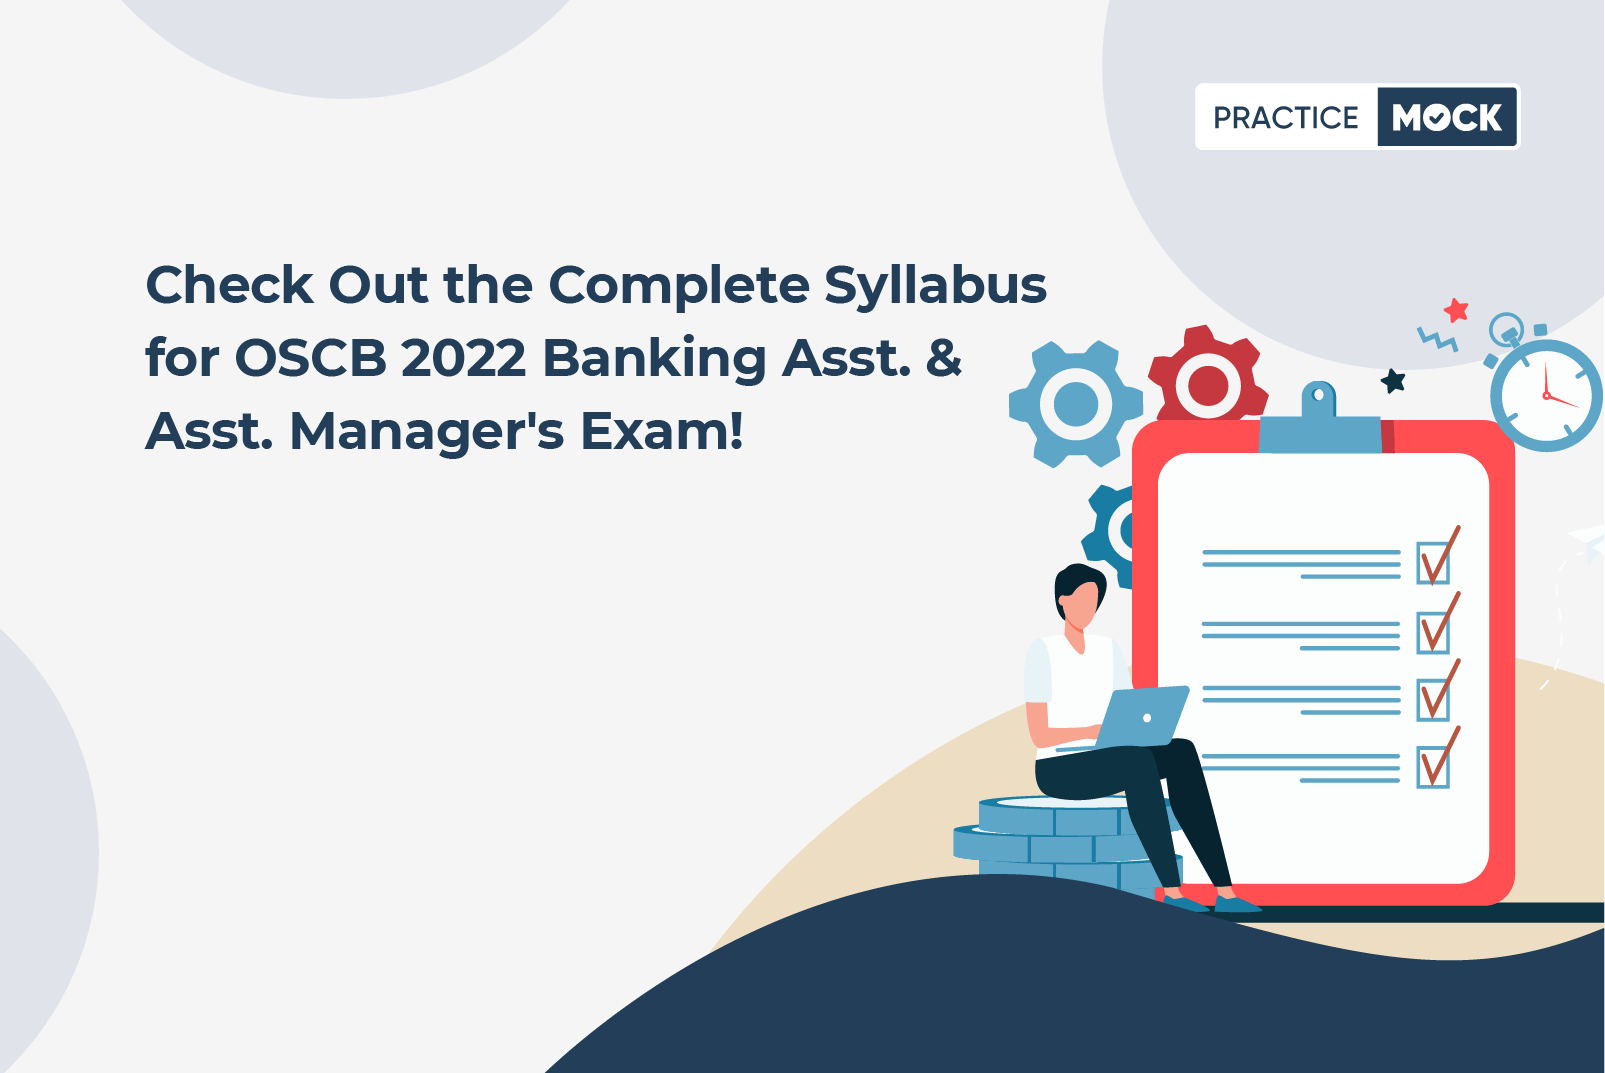 OSCB 2022 Exam Pattern & Syllabus for Banking Asst. & Asst. Manager